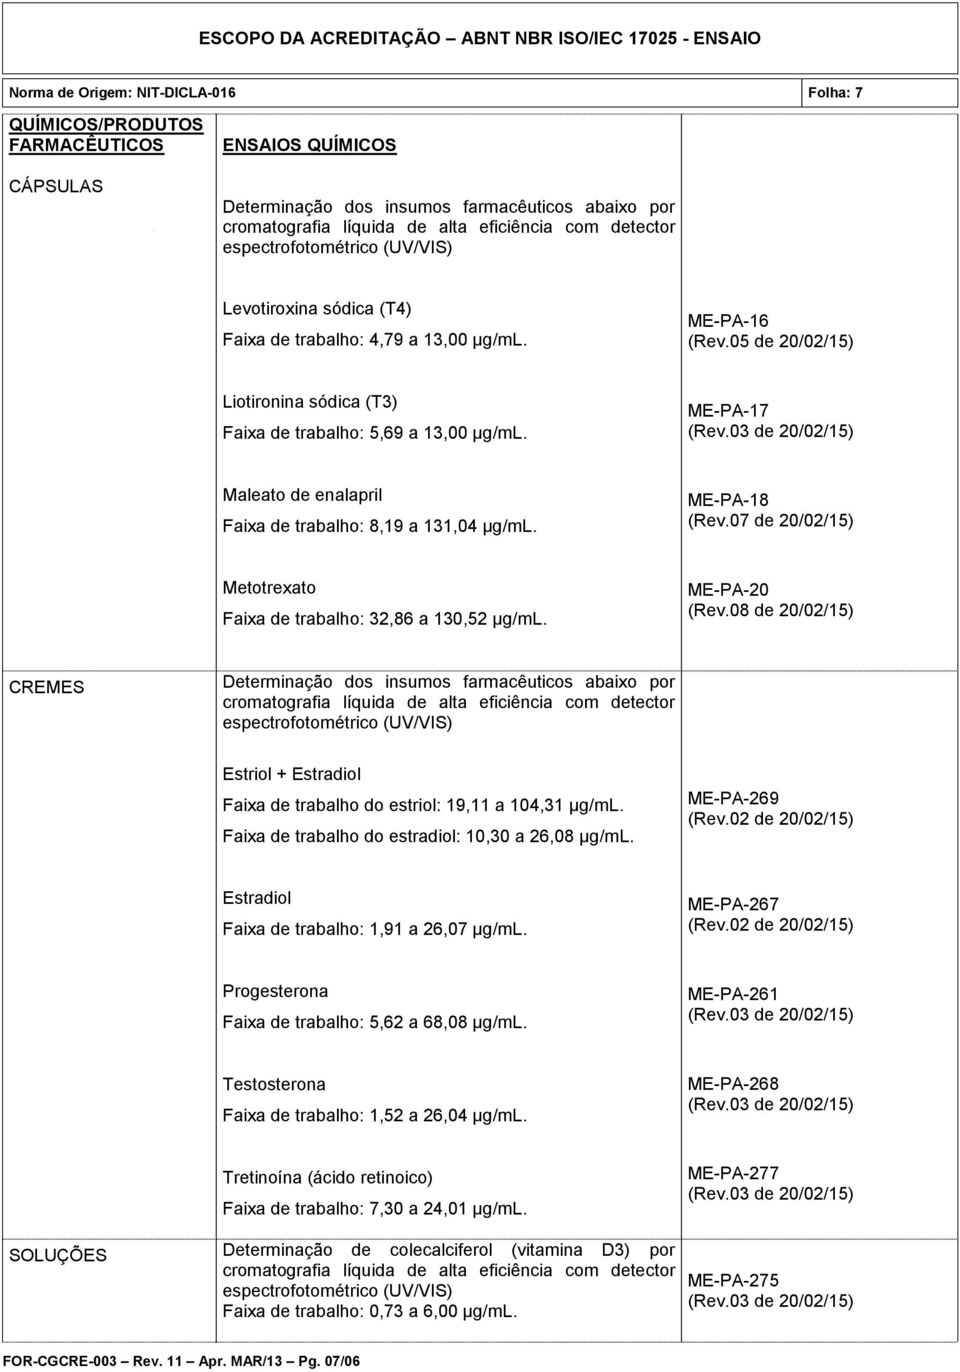 ME-PA-18 Metotrexato Faixa de trabalho: 32,86 a 130,52 µg/ml. ME-PA-20 CREMES Determinação dos insumos farmacêuticos abaixo por Estriol + Estradiol Faixa de trabalho do estriol: 19,11 a 104,31 µg/ml.